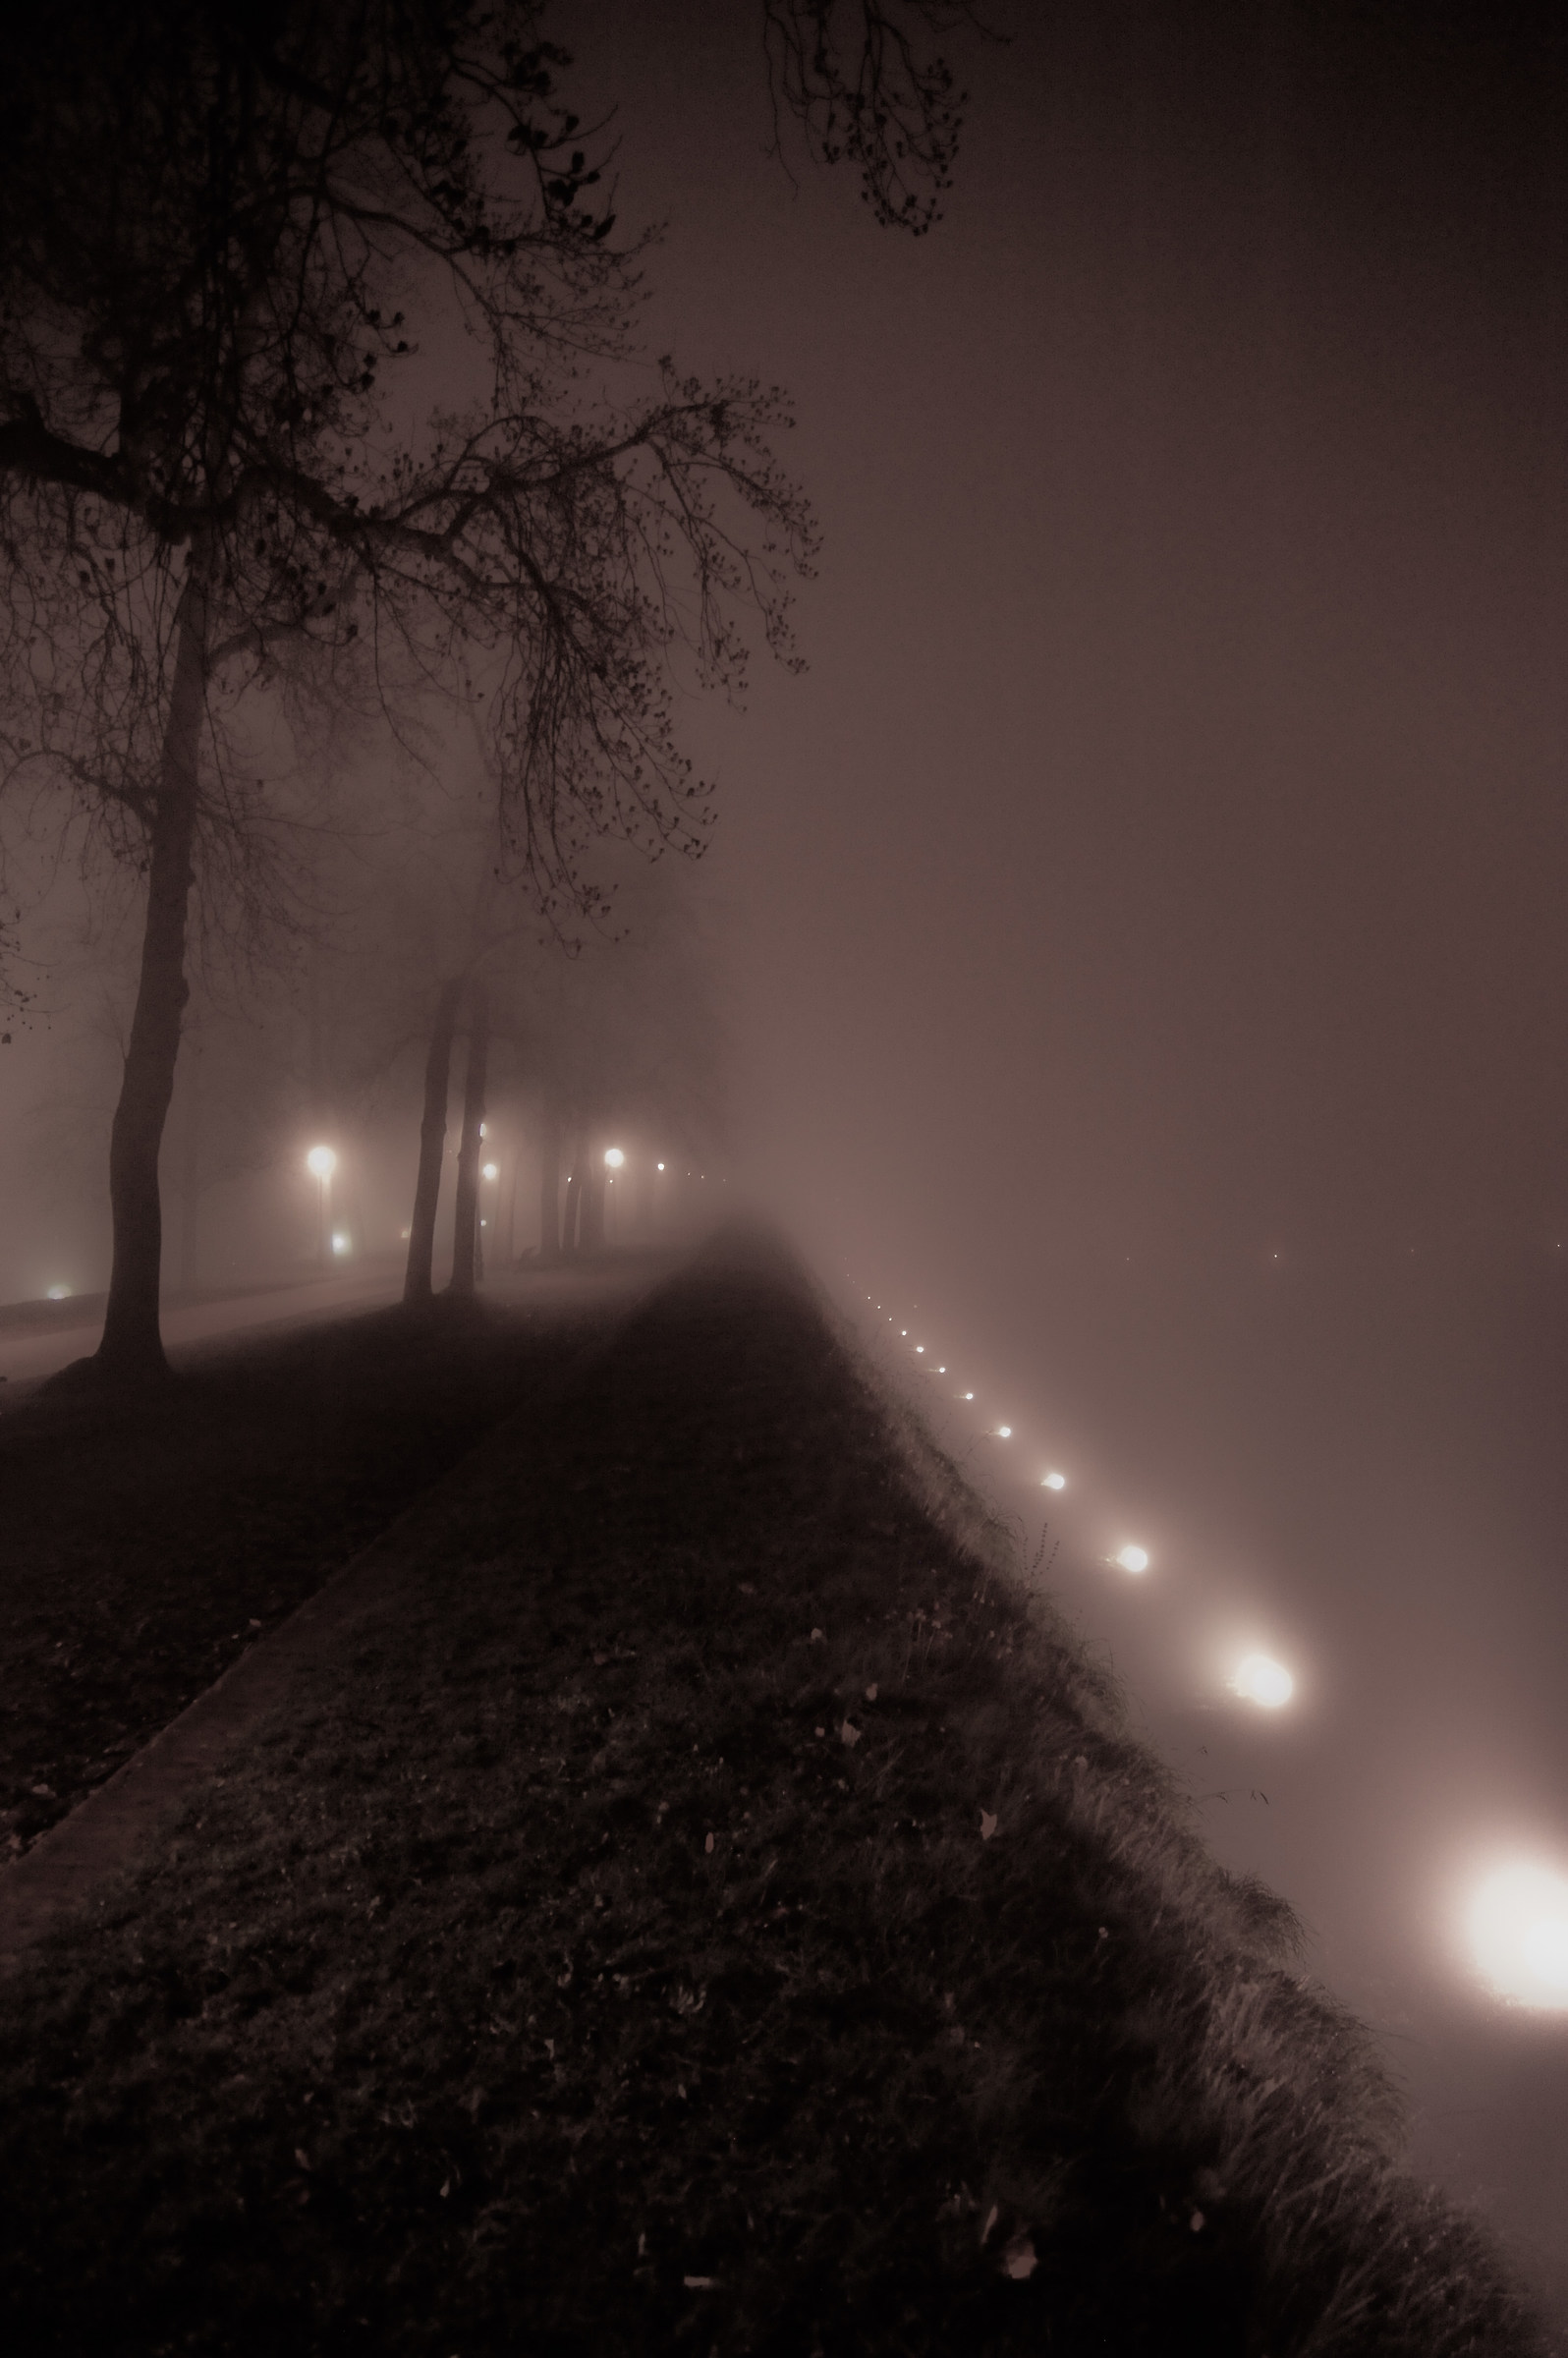 Between the fog...